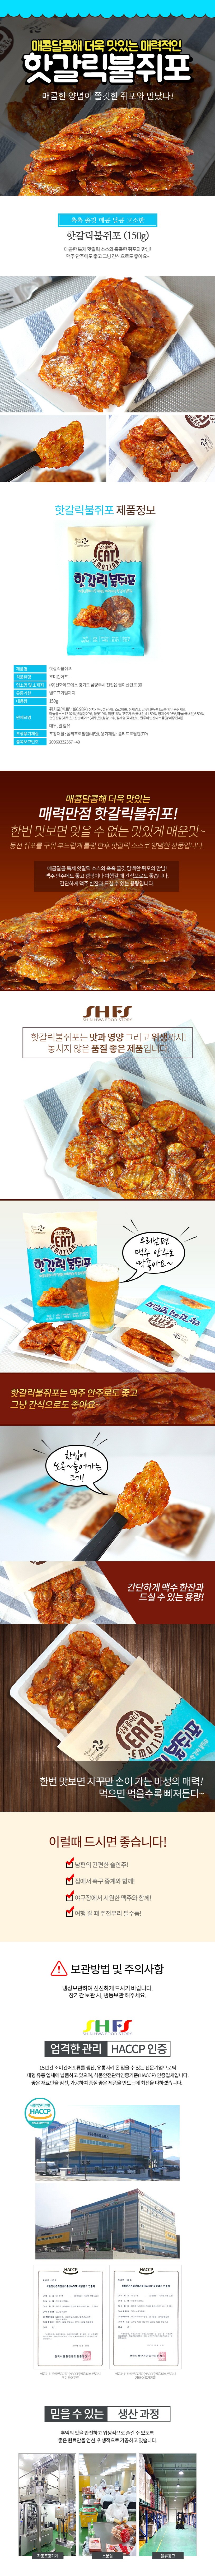 매콤달콤해 더욱 맛있는 매력적인 핫갈릭불쥐포